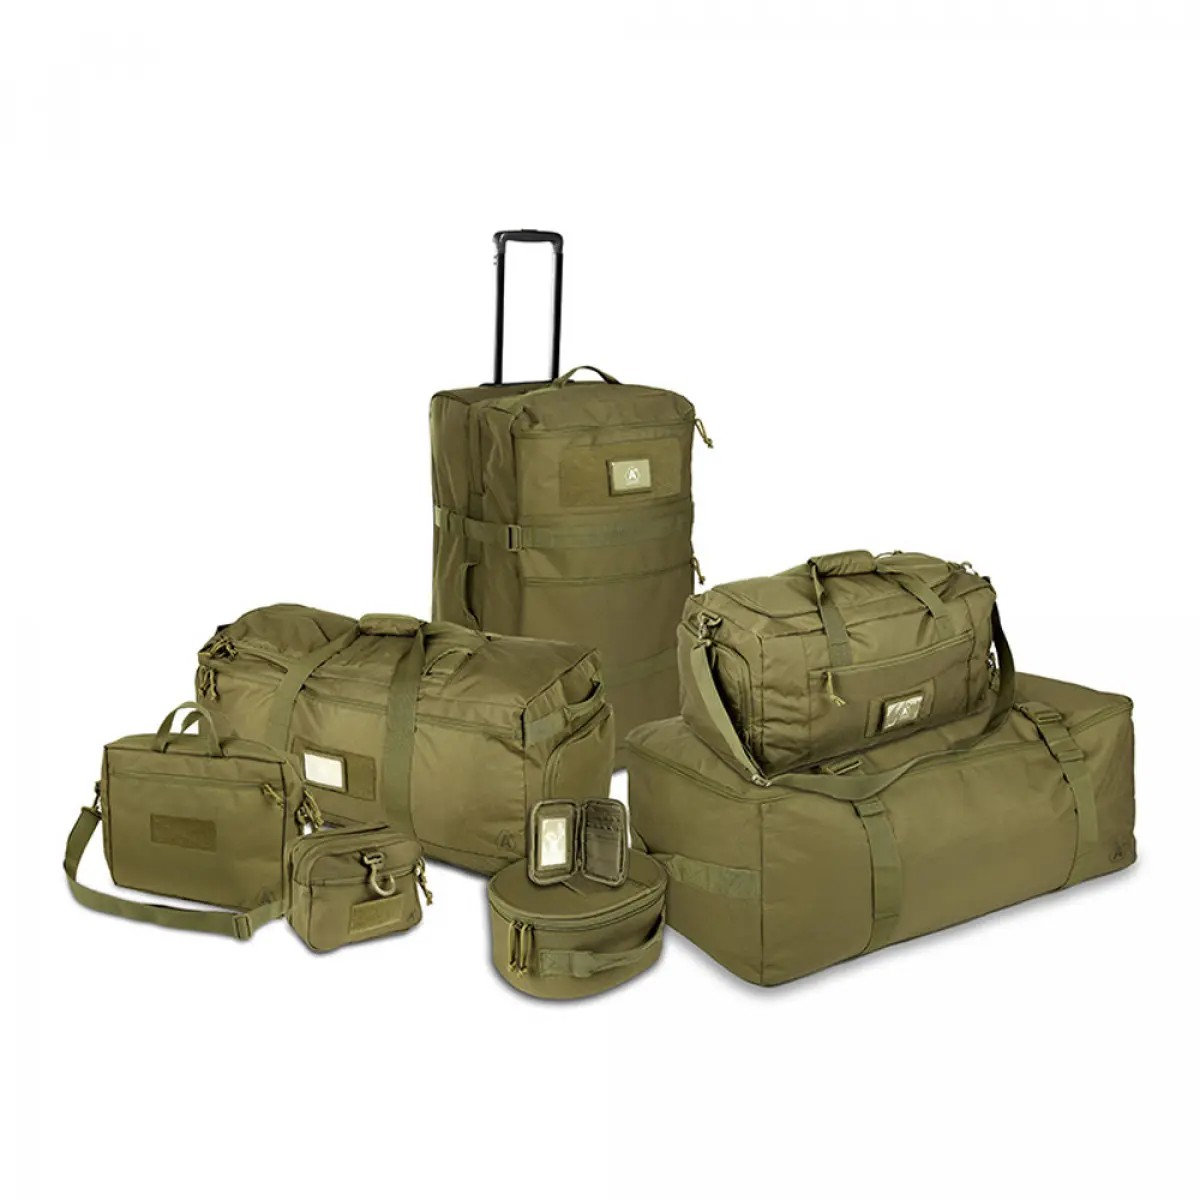 Транспортная сумка Transall A10 Equipment® на 45 л. Влагостойкое покрытие. Олива 10